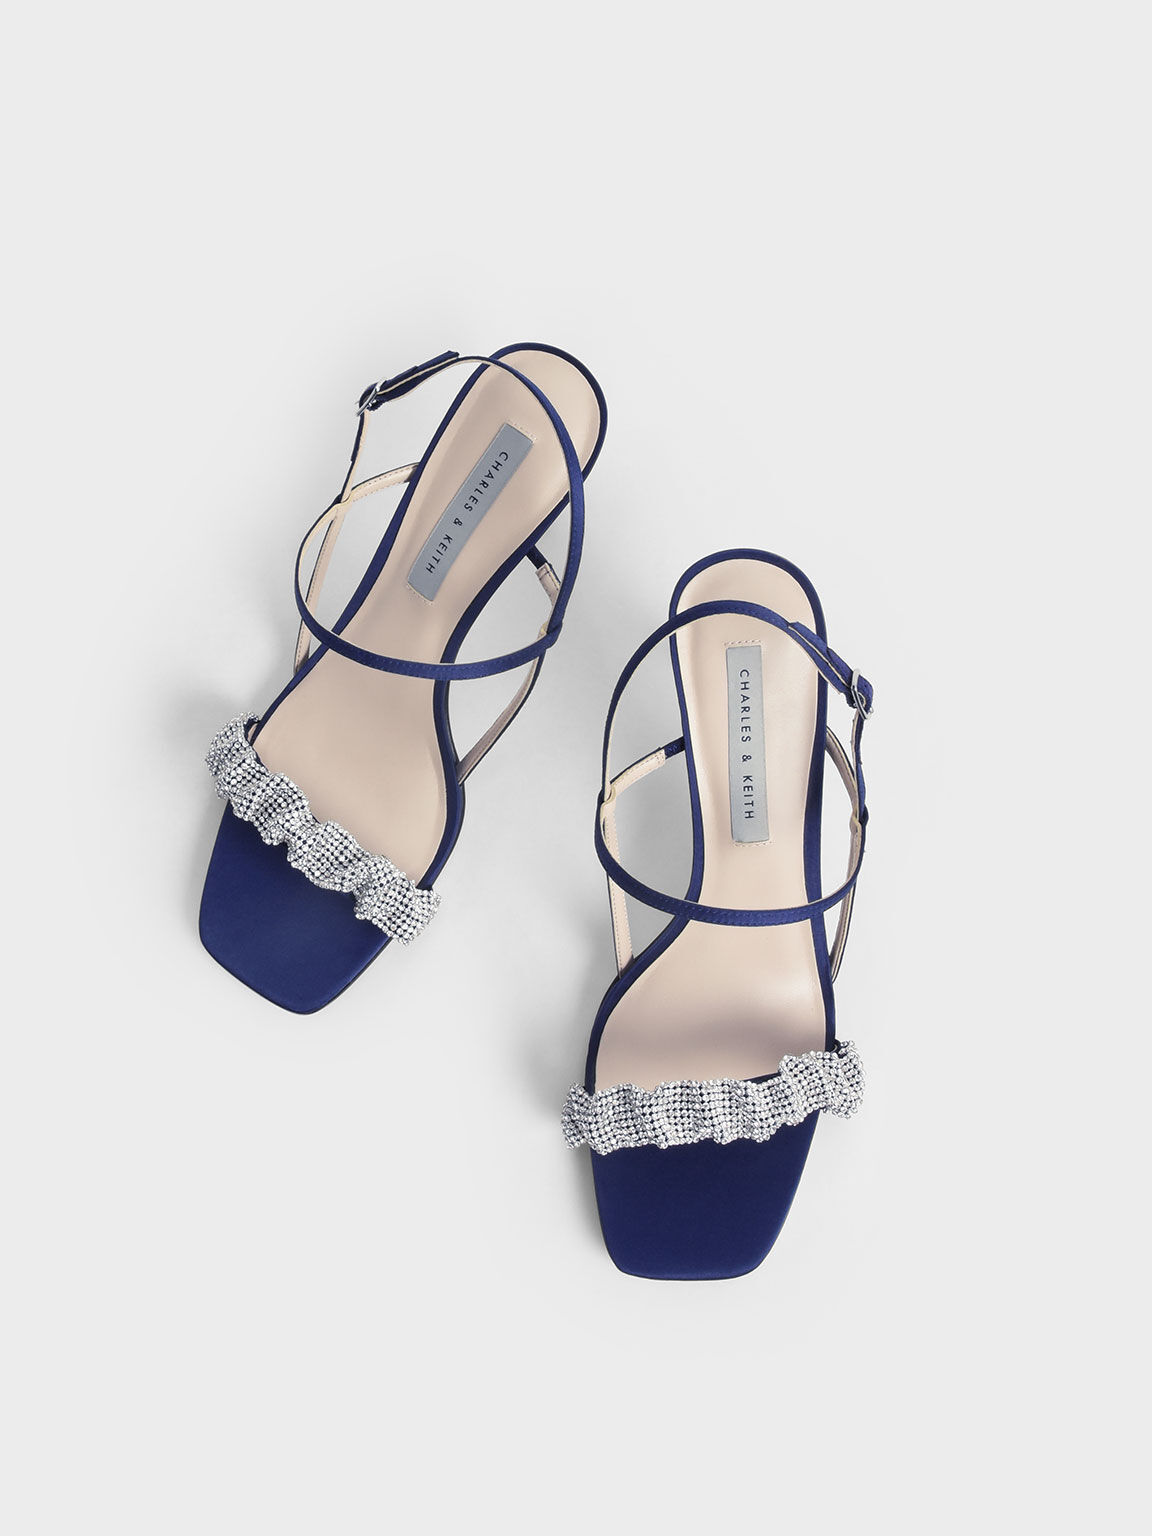 Gem-Embellished Satin Stiletto Sandals, Dark Blue, hi-res